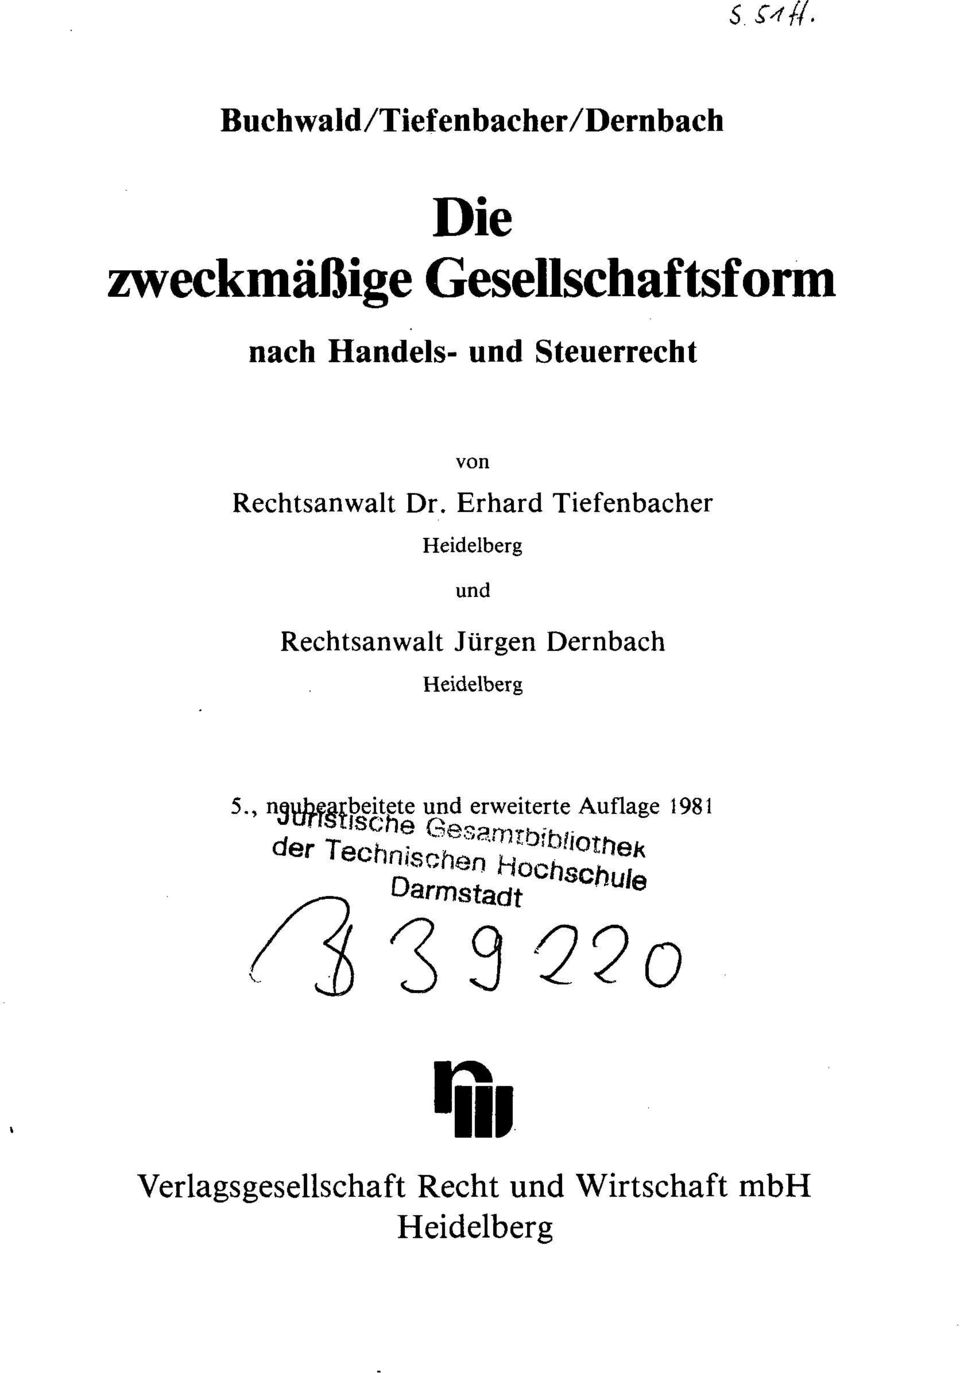 Erhard Tiefenbacher Heidelberg und Rechtsanwalt Jürgen Dernbach Heidelberg 5.